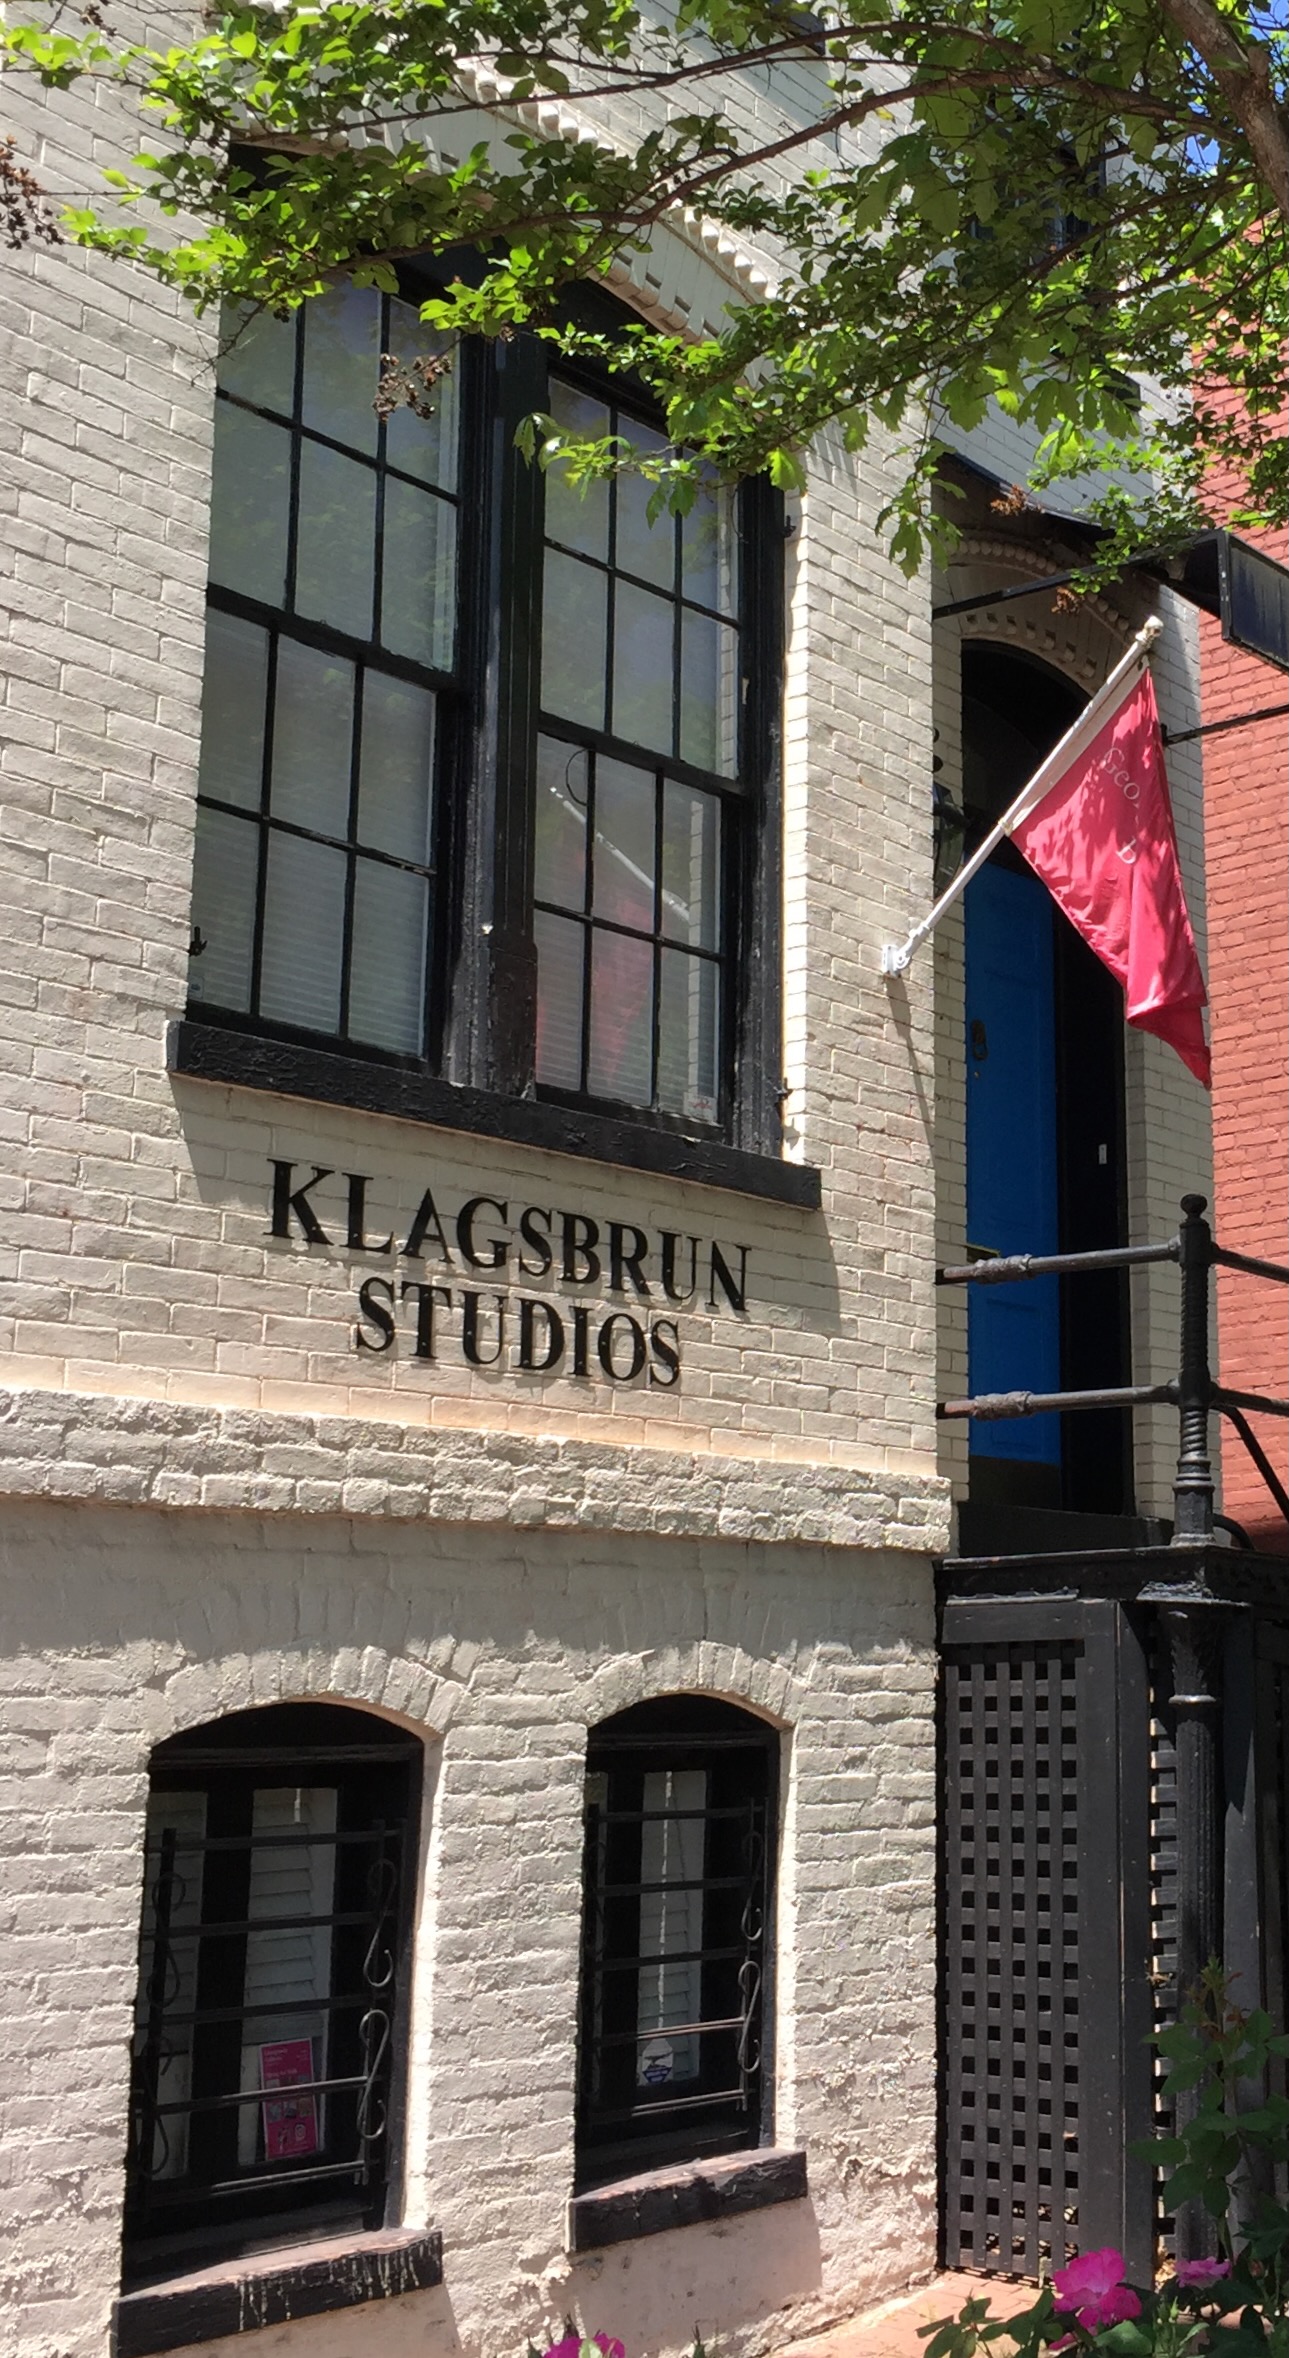 Klagsbrun Studios